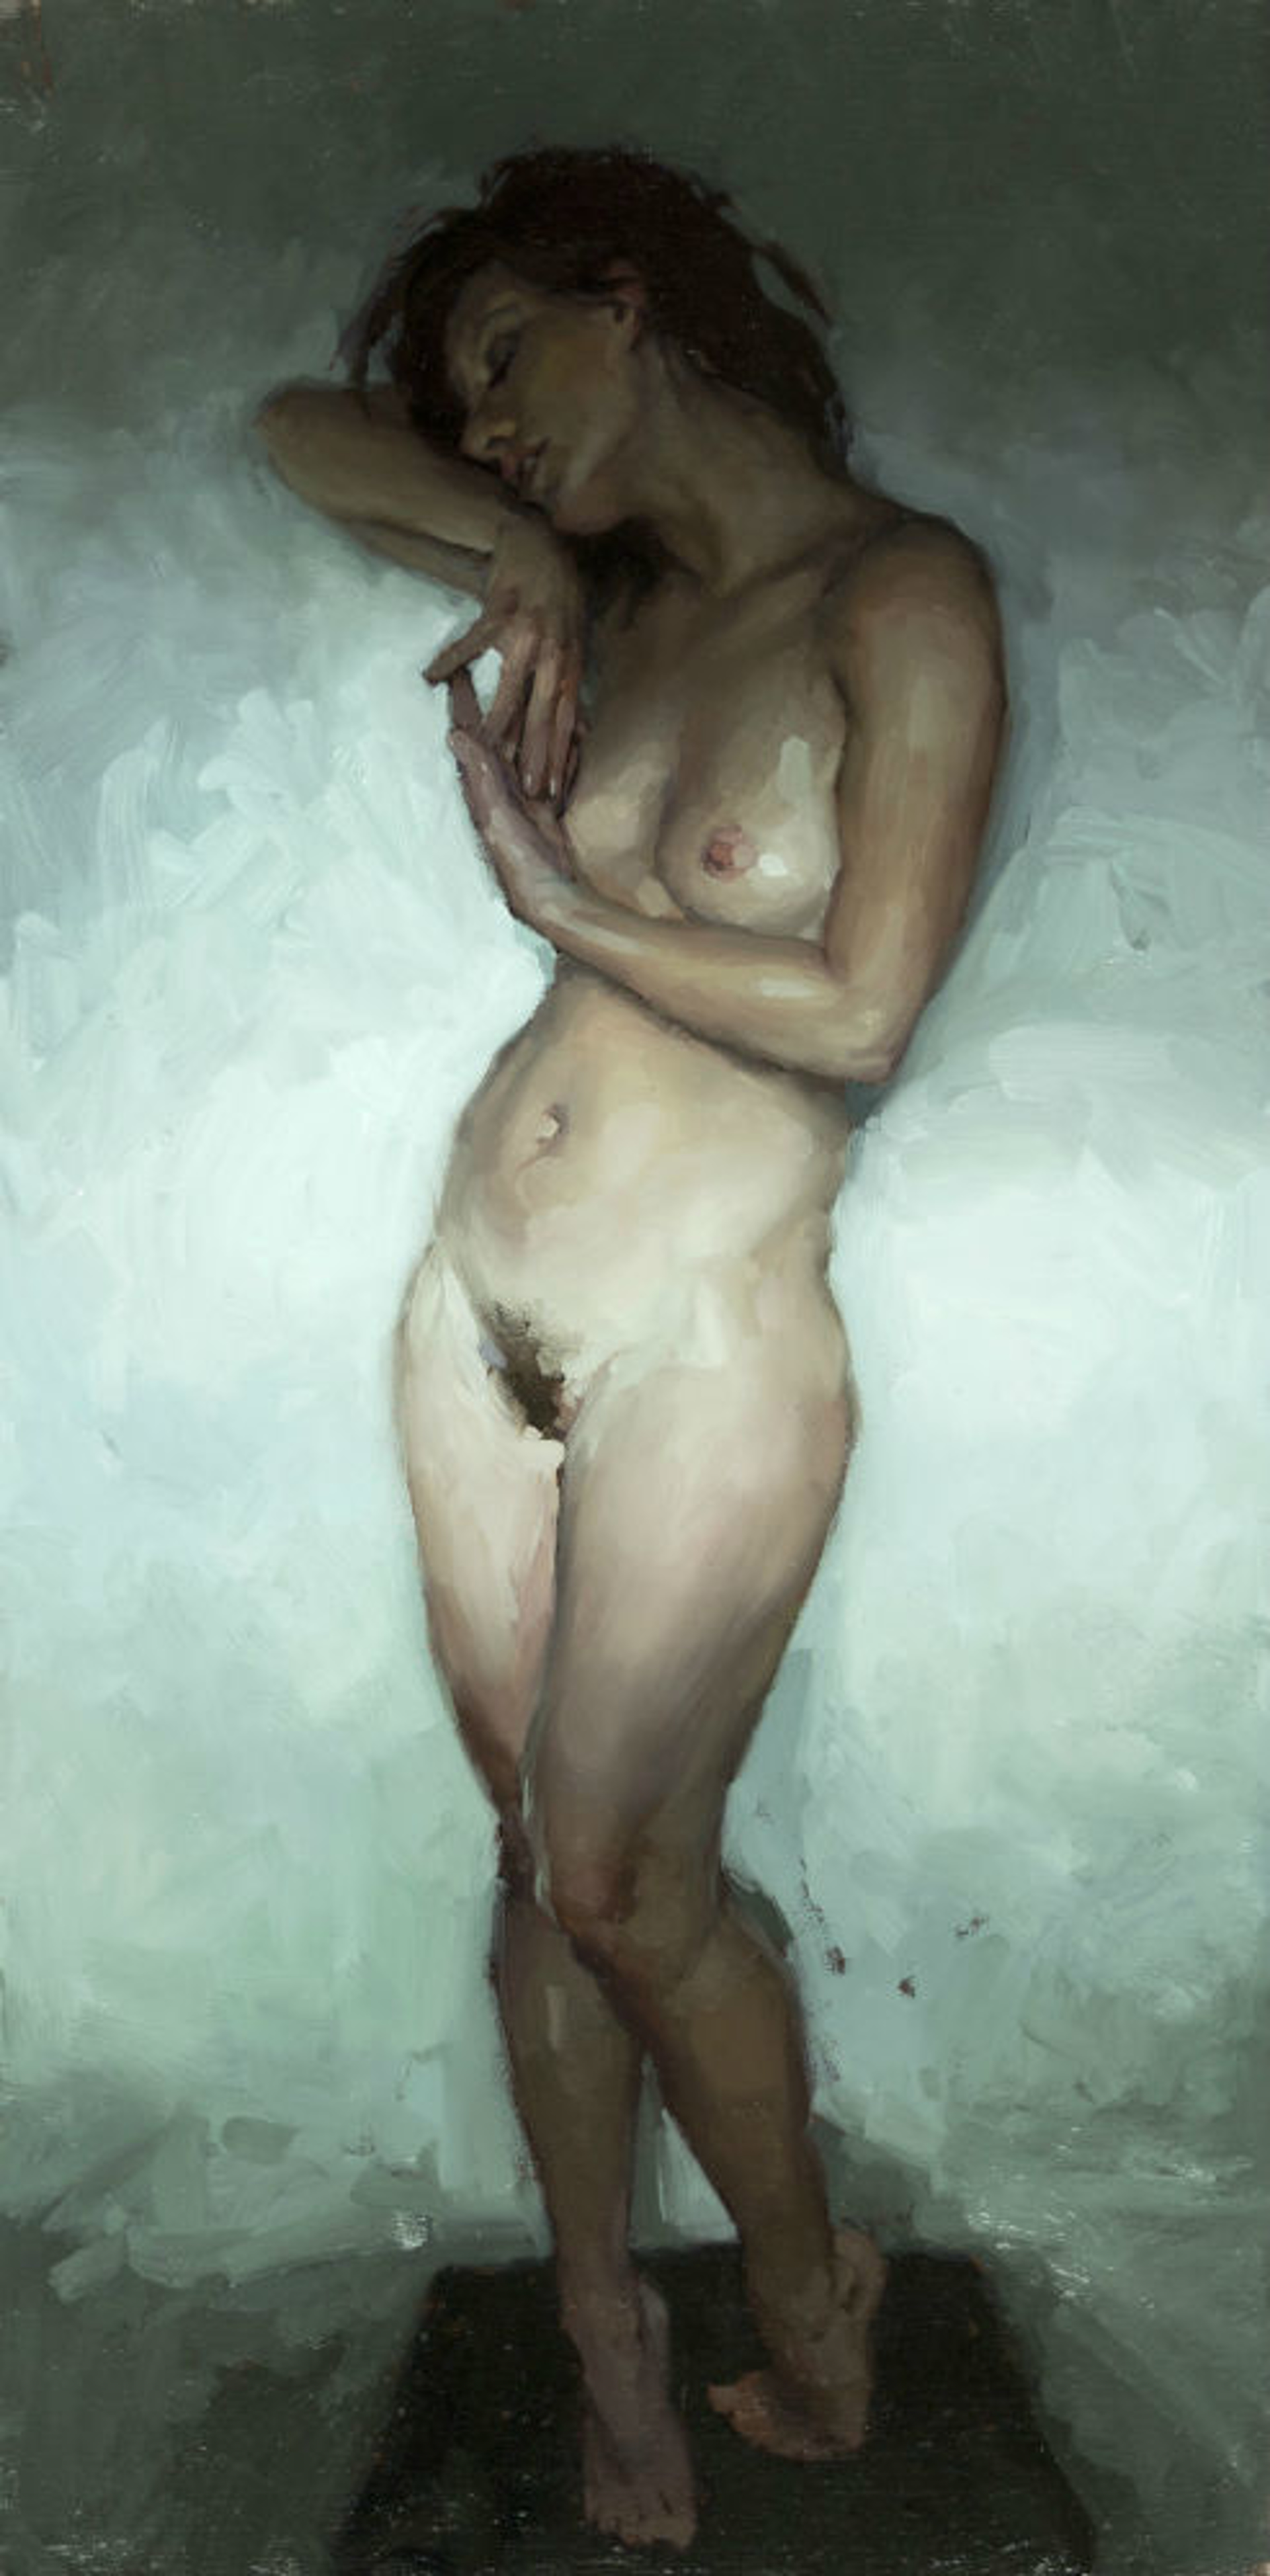 Nude Study, Window Light No. 2 by Jeremy Mann